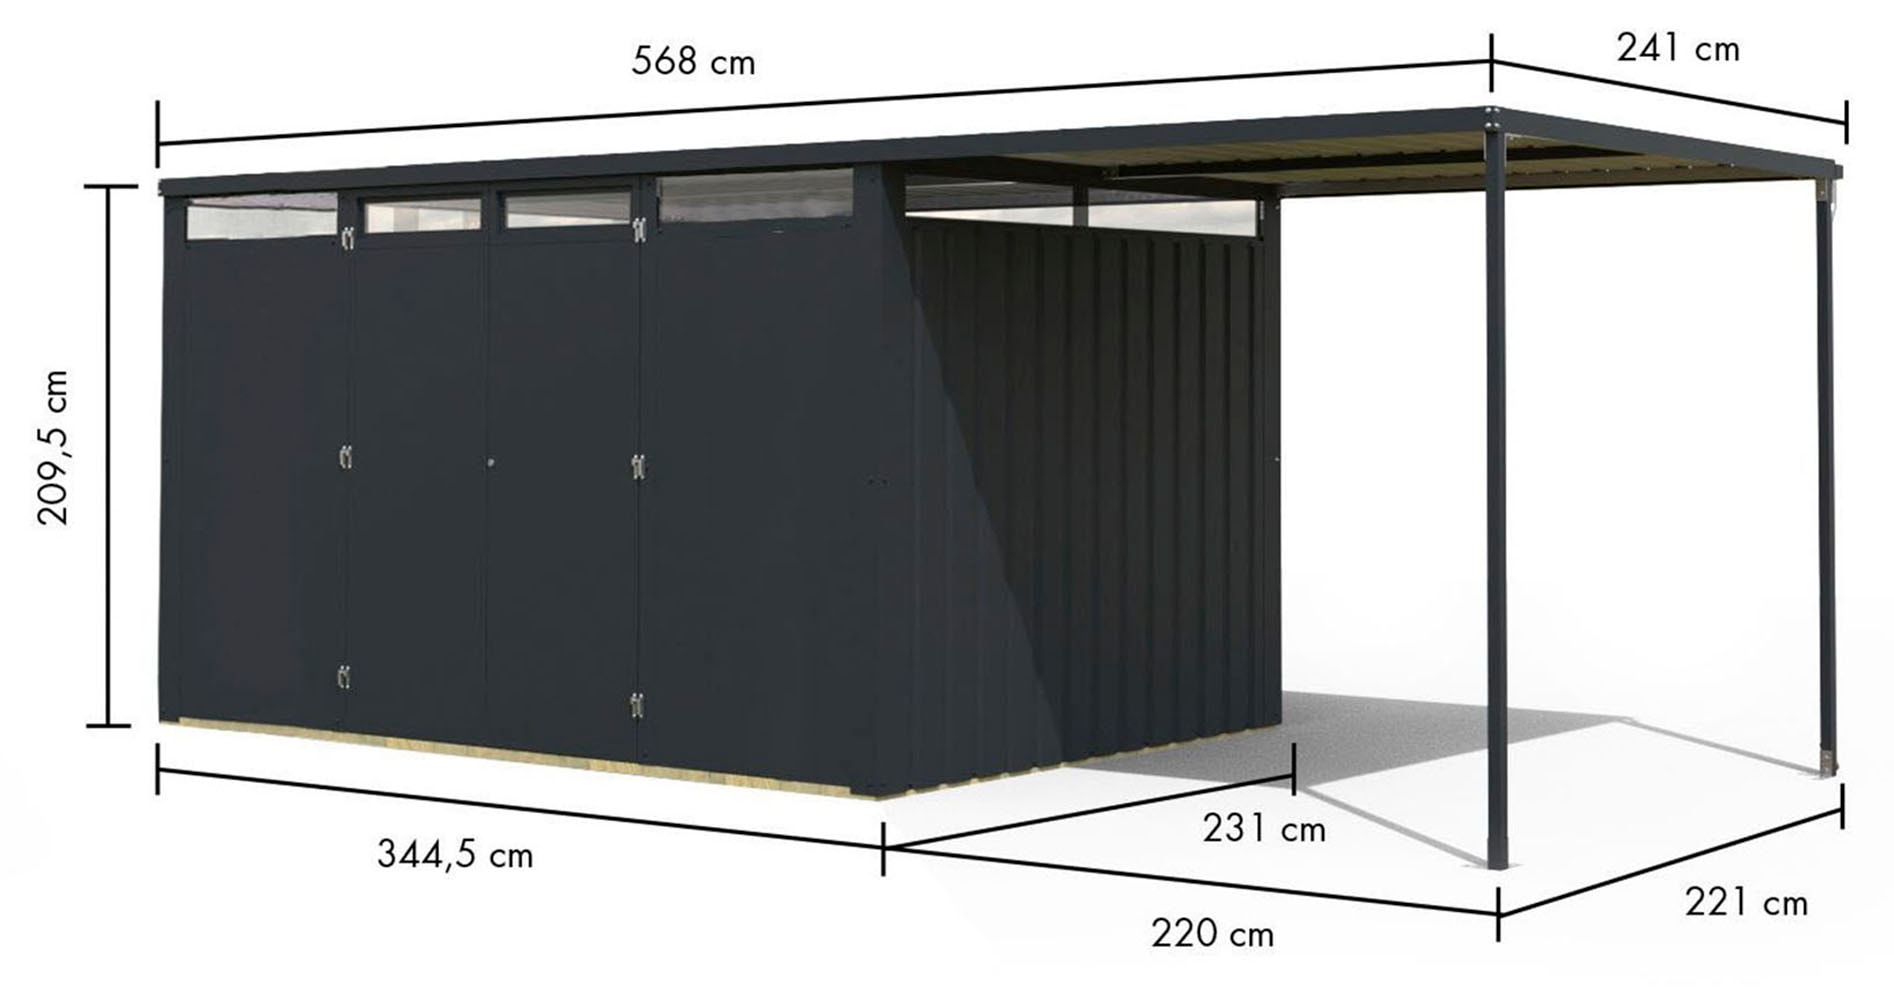 Karibu Gartenhaus »"Leto 3" SET mit Anbaudach 2,25 m Breite«, staubgrau oder anthrazit